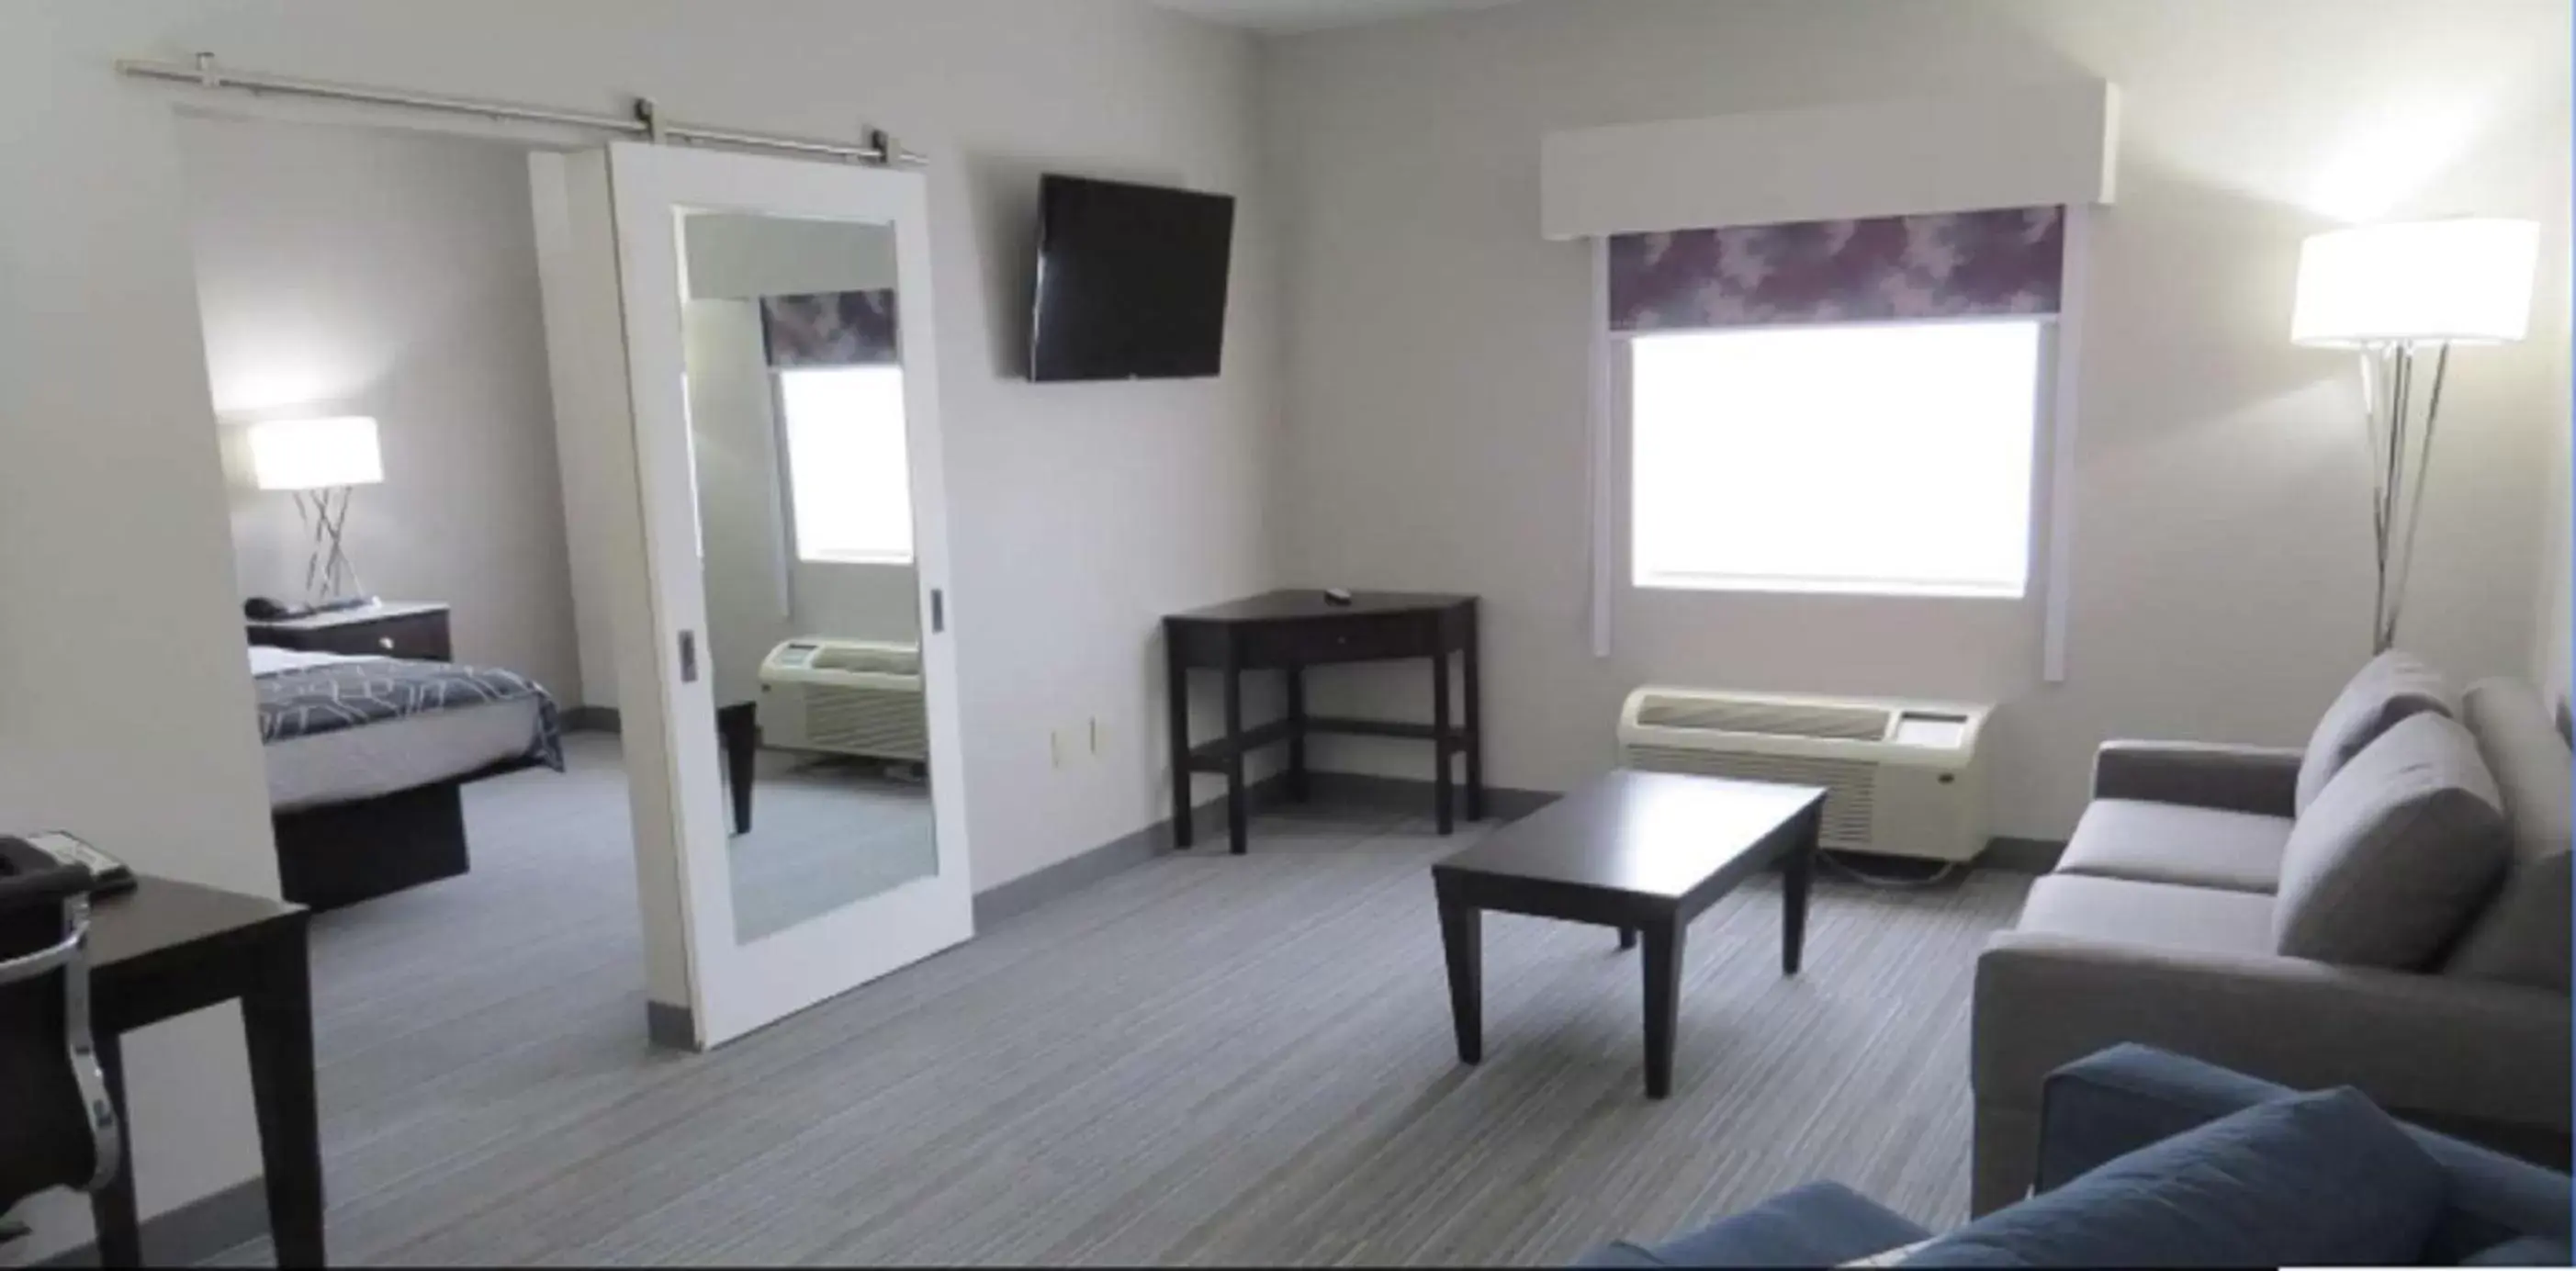 Living room, Seating Area in Best Western Plus Wilkes Barre-Scranton Airport Hotel